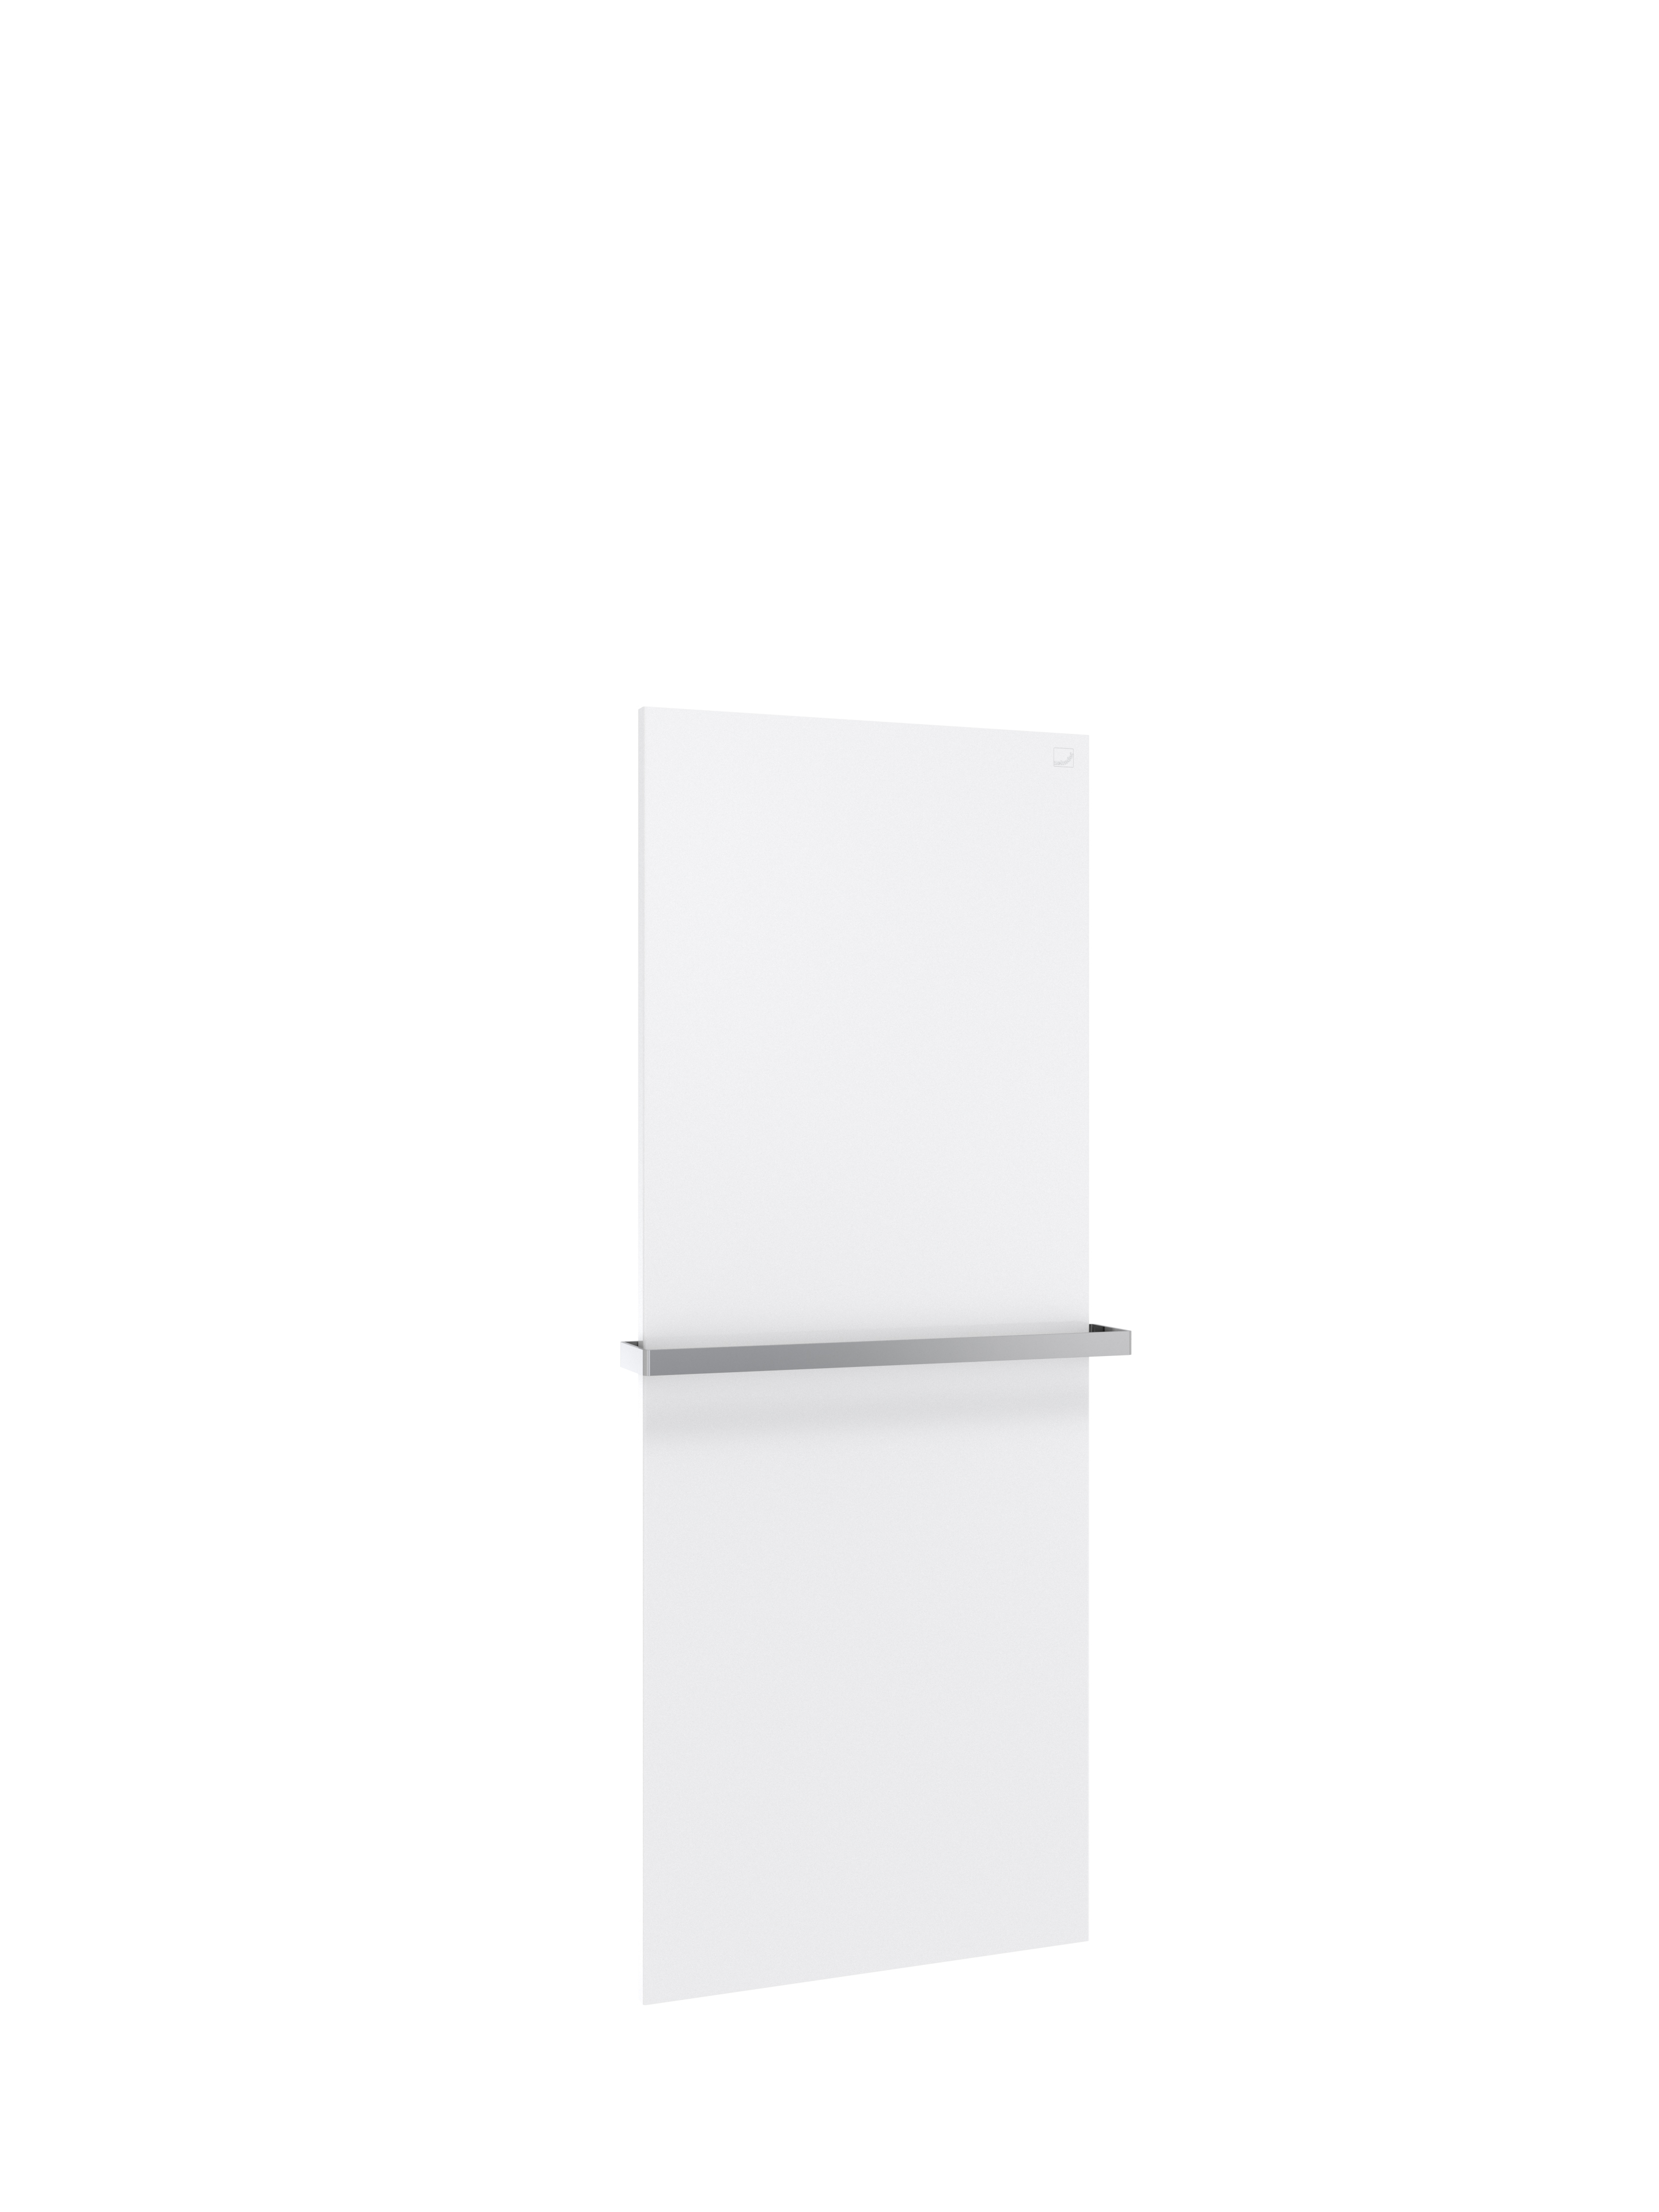 Zehnder Design-Elektroheizkörper „Fina Lean Bar“ 50 × 130 cm in Verkehrsweiß (RAL 9016, glänzend)